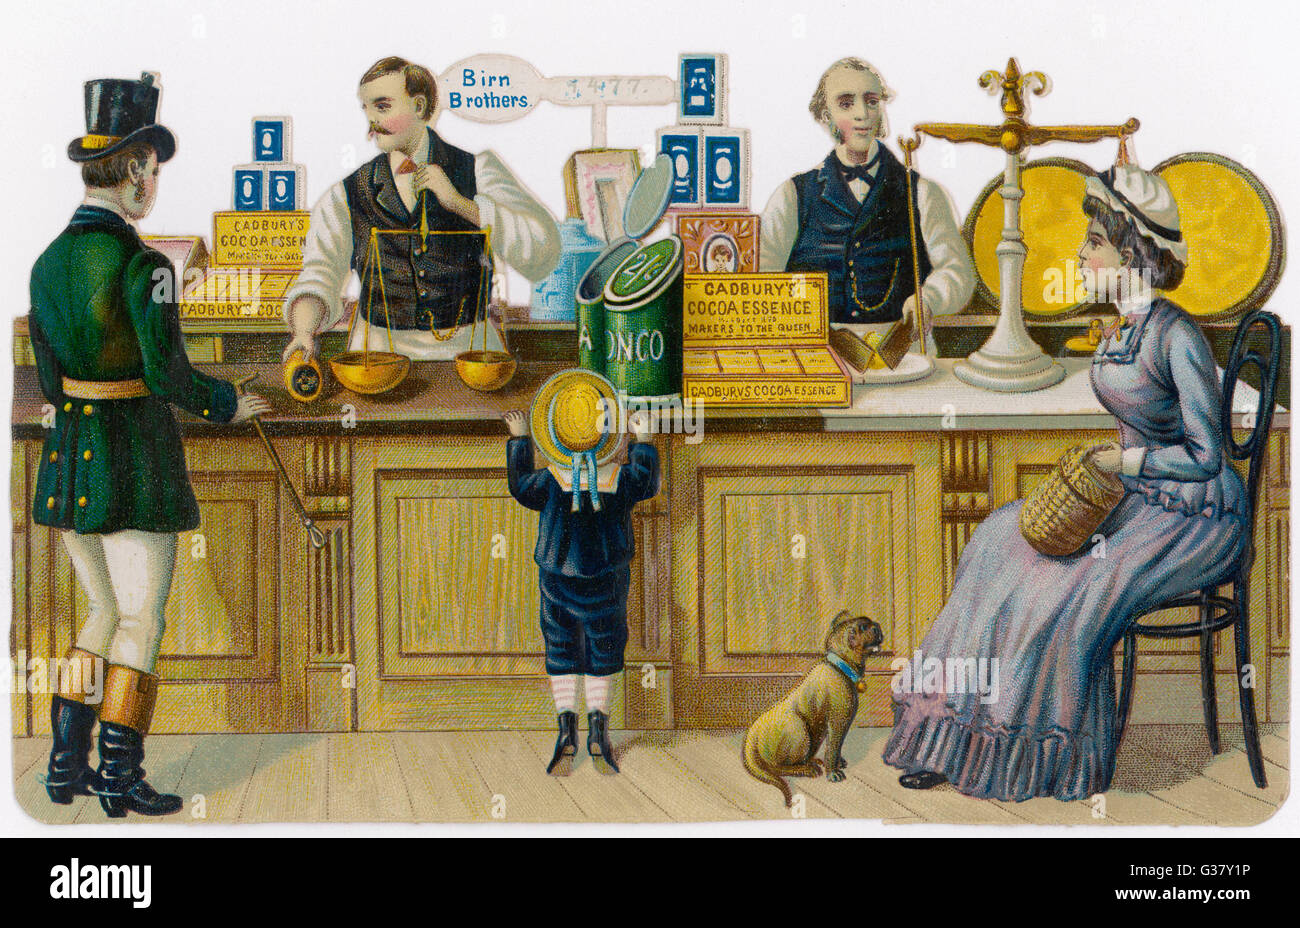 Ein Lebensmittelhändler Shop-eine Kundin sitzt, einem Diener sammelt eine Bestellung, ein Junge und ein Hund warten, hoffentlich.     Datum: Ende des 19. Jahrhunderts Stockfoto